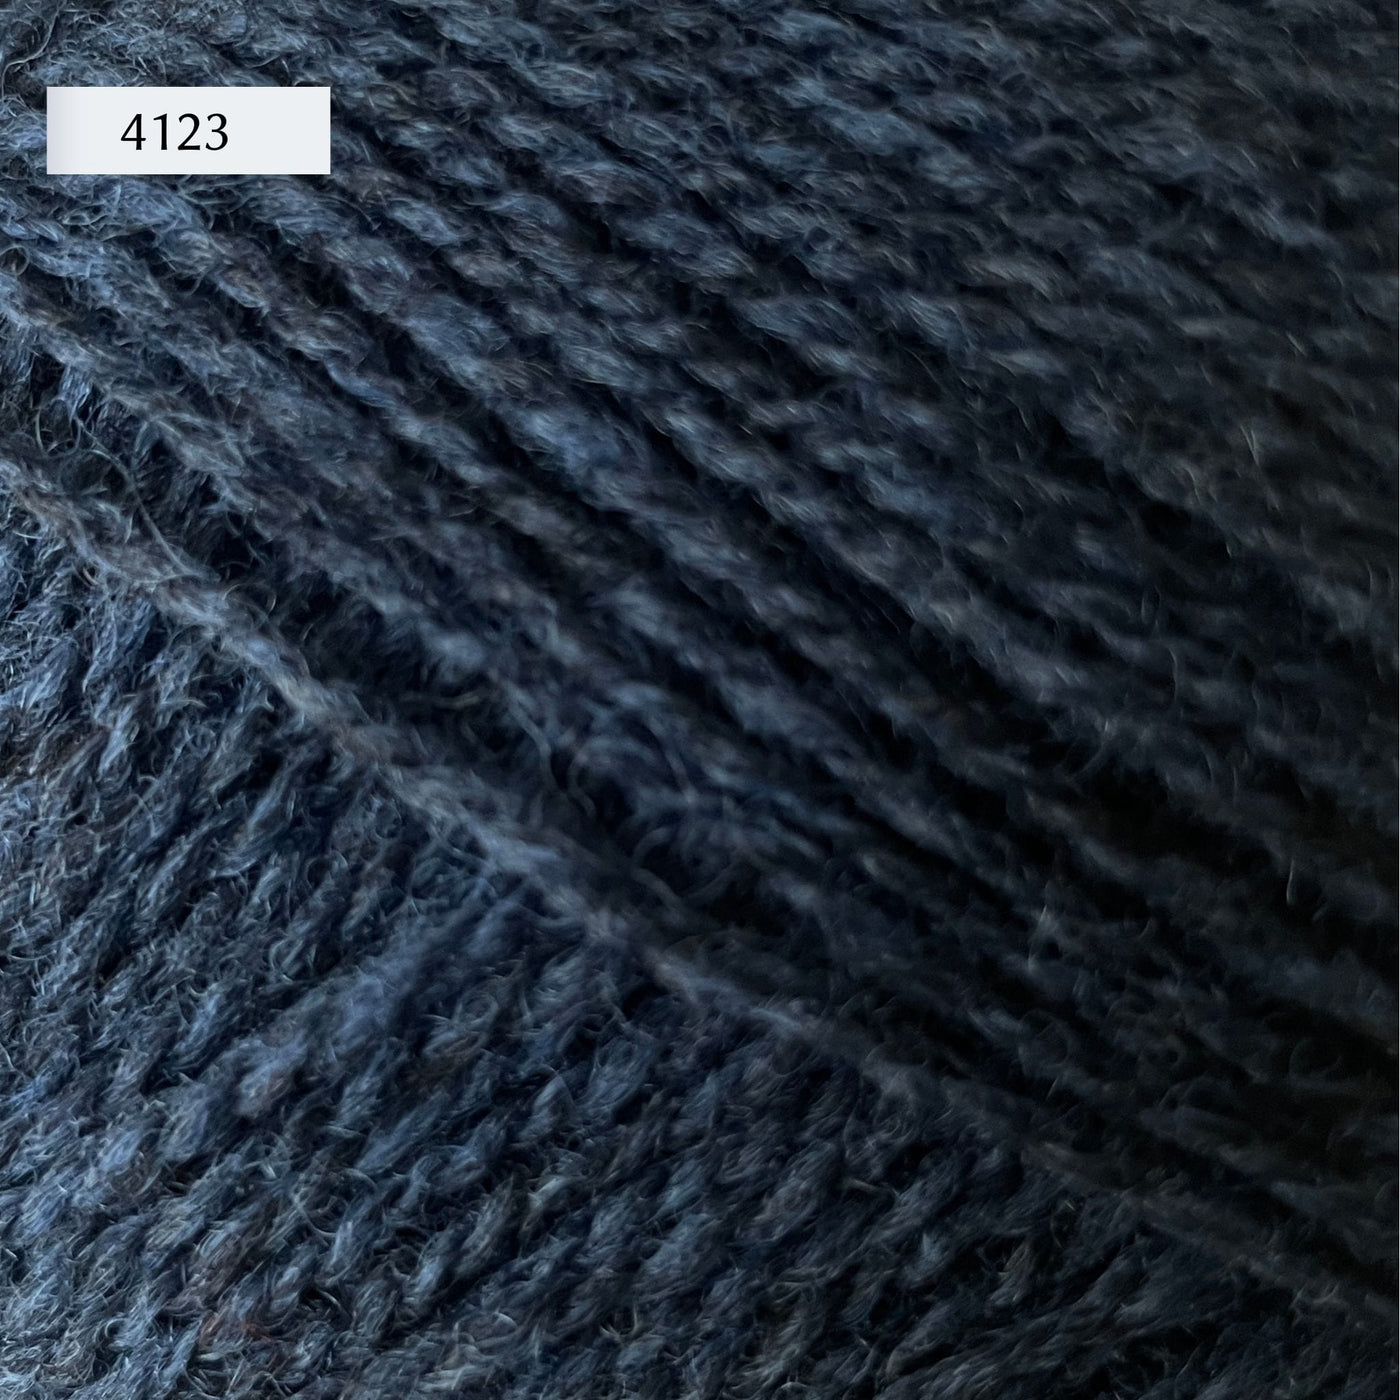 Rauma Finullgarn, a fingering/sport weight yarn, in color 4123, a heathered dark petrol blue